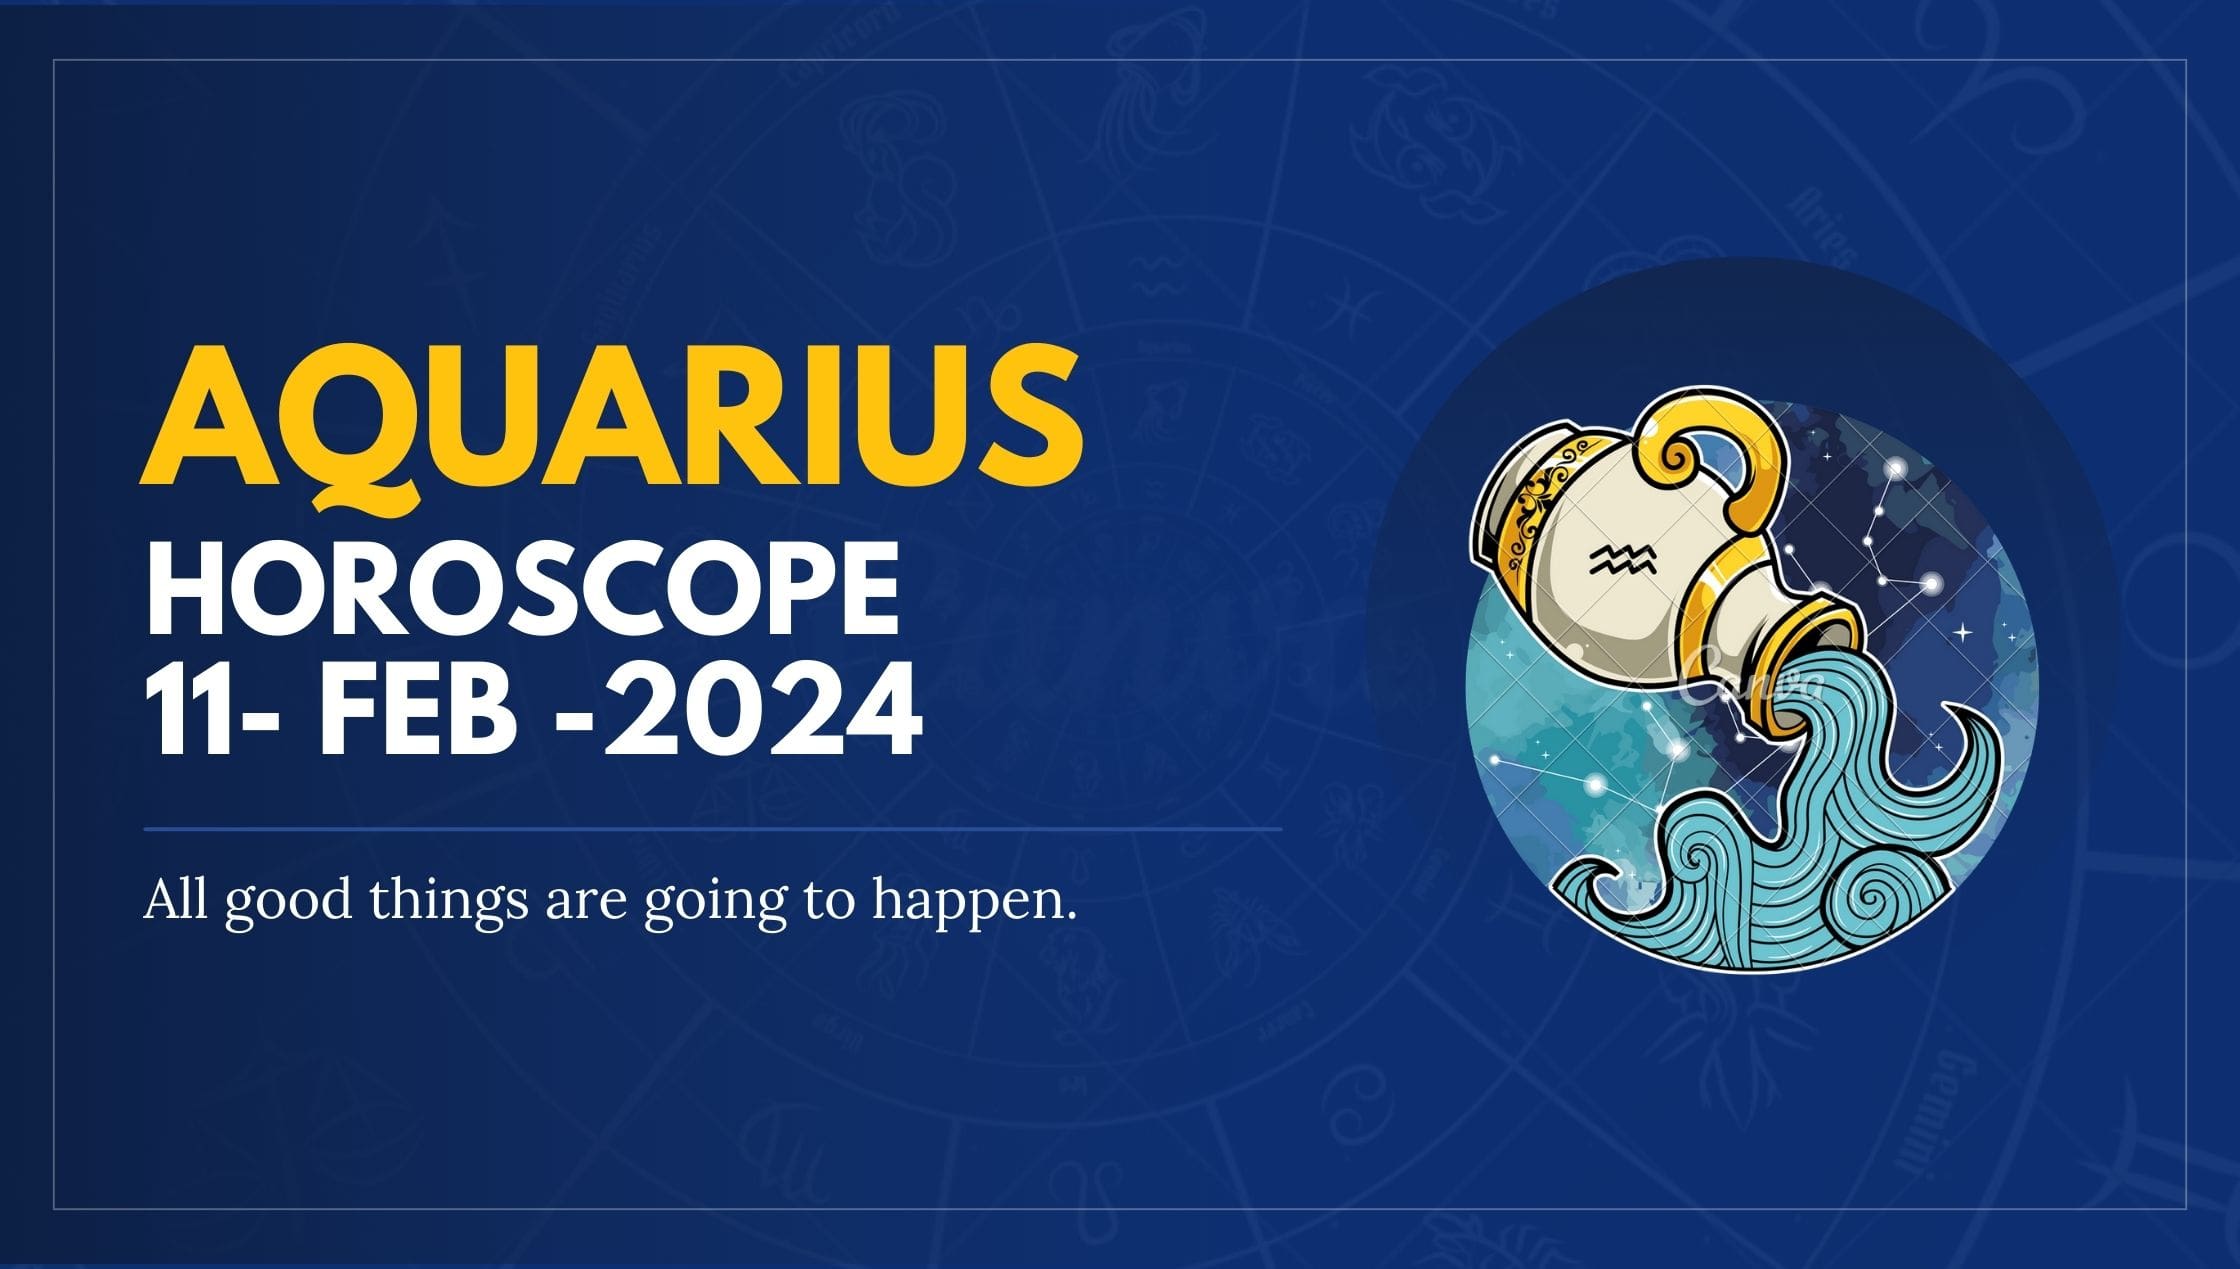 Aquarius Horoscope 11- FEB -2024